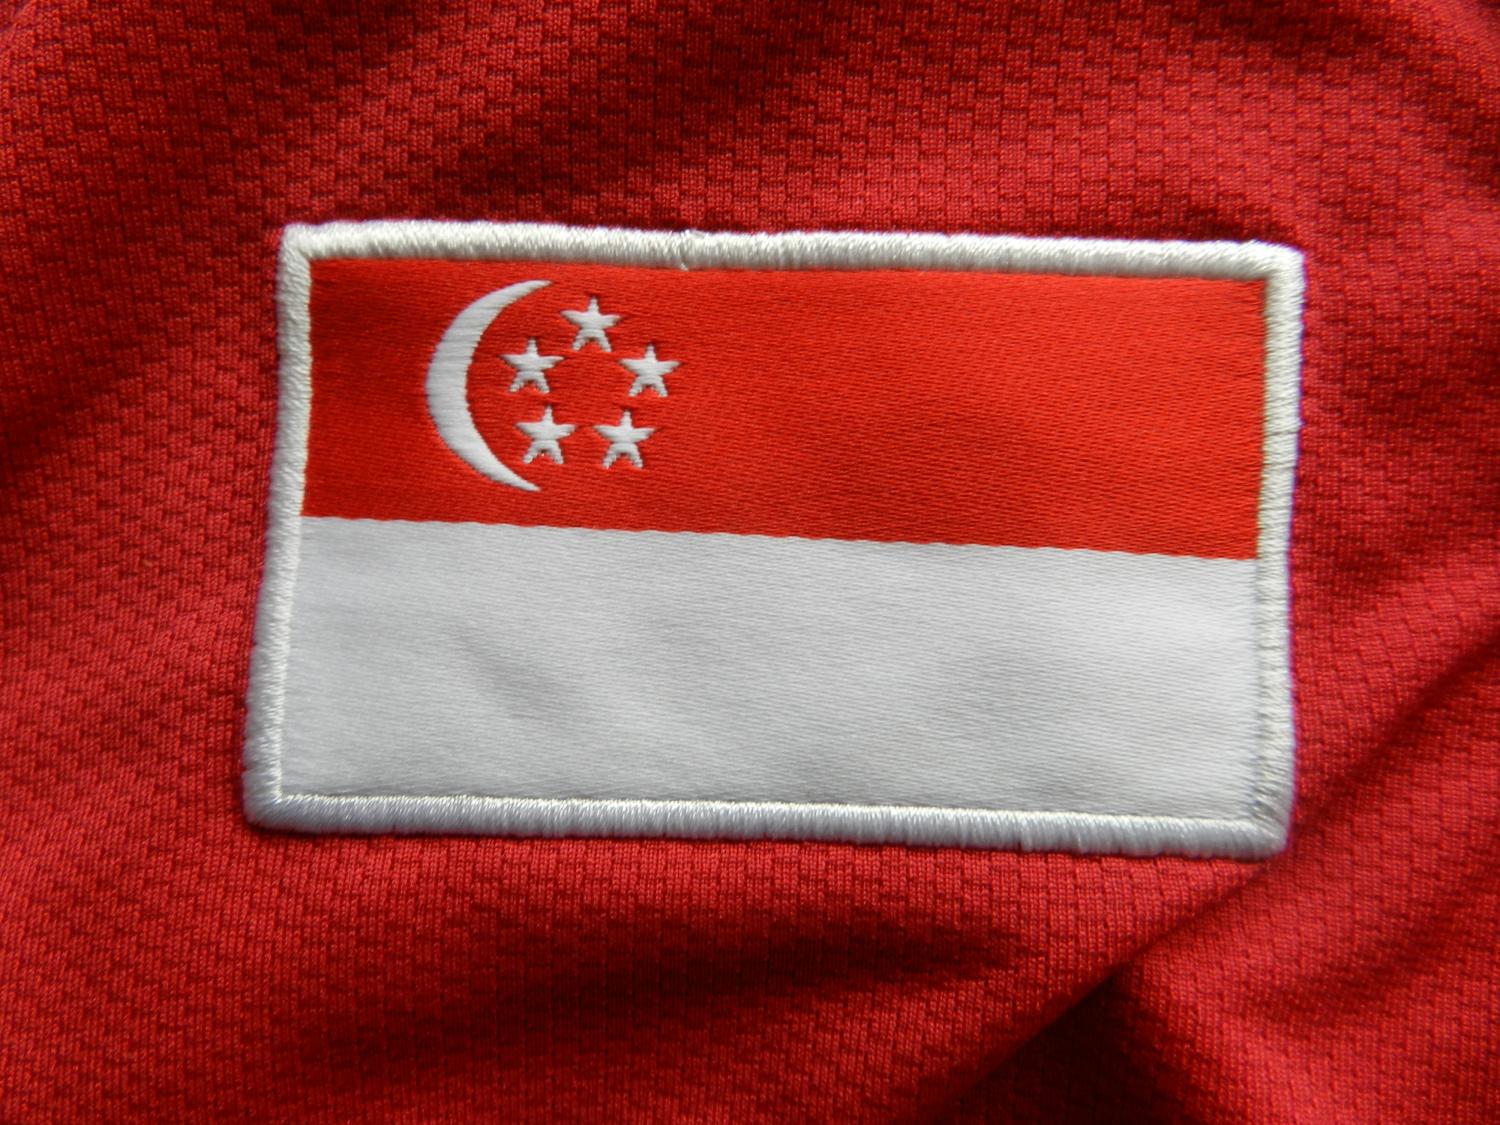 maillot équipe de singapour domicile 2010-2012 rétro